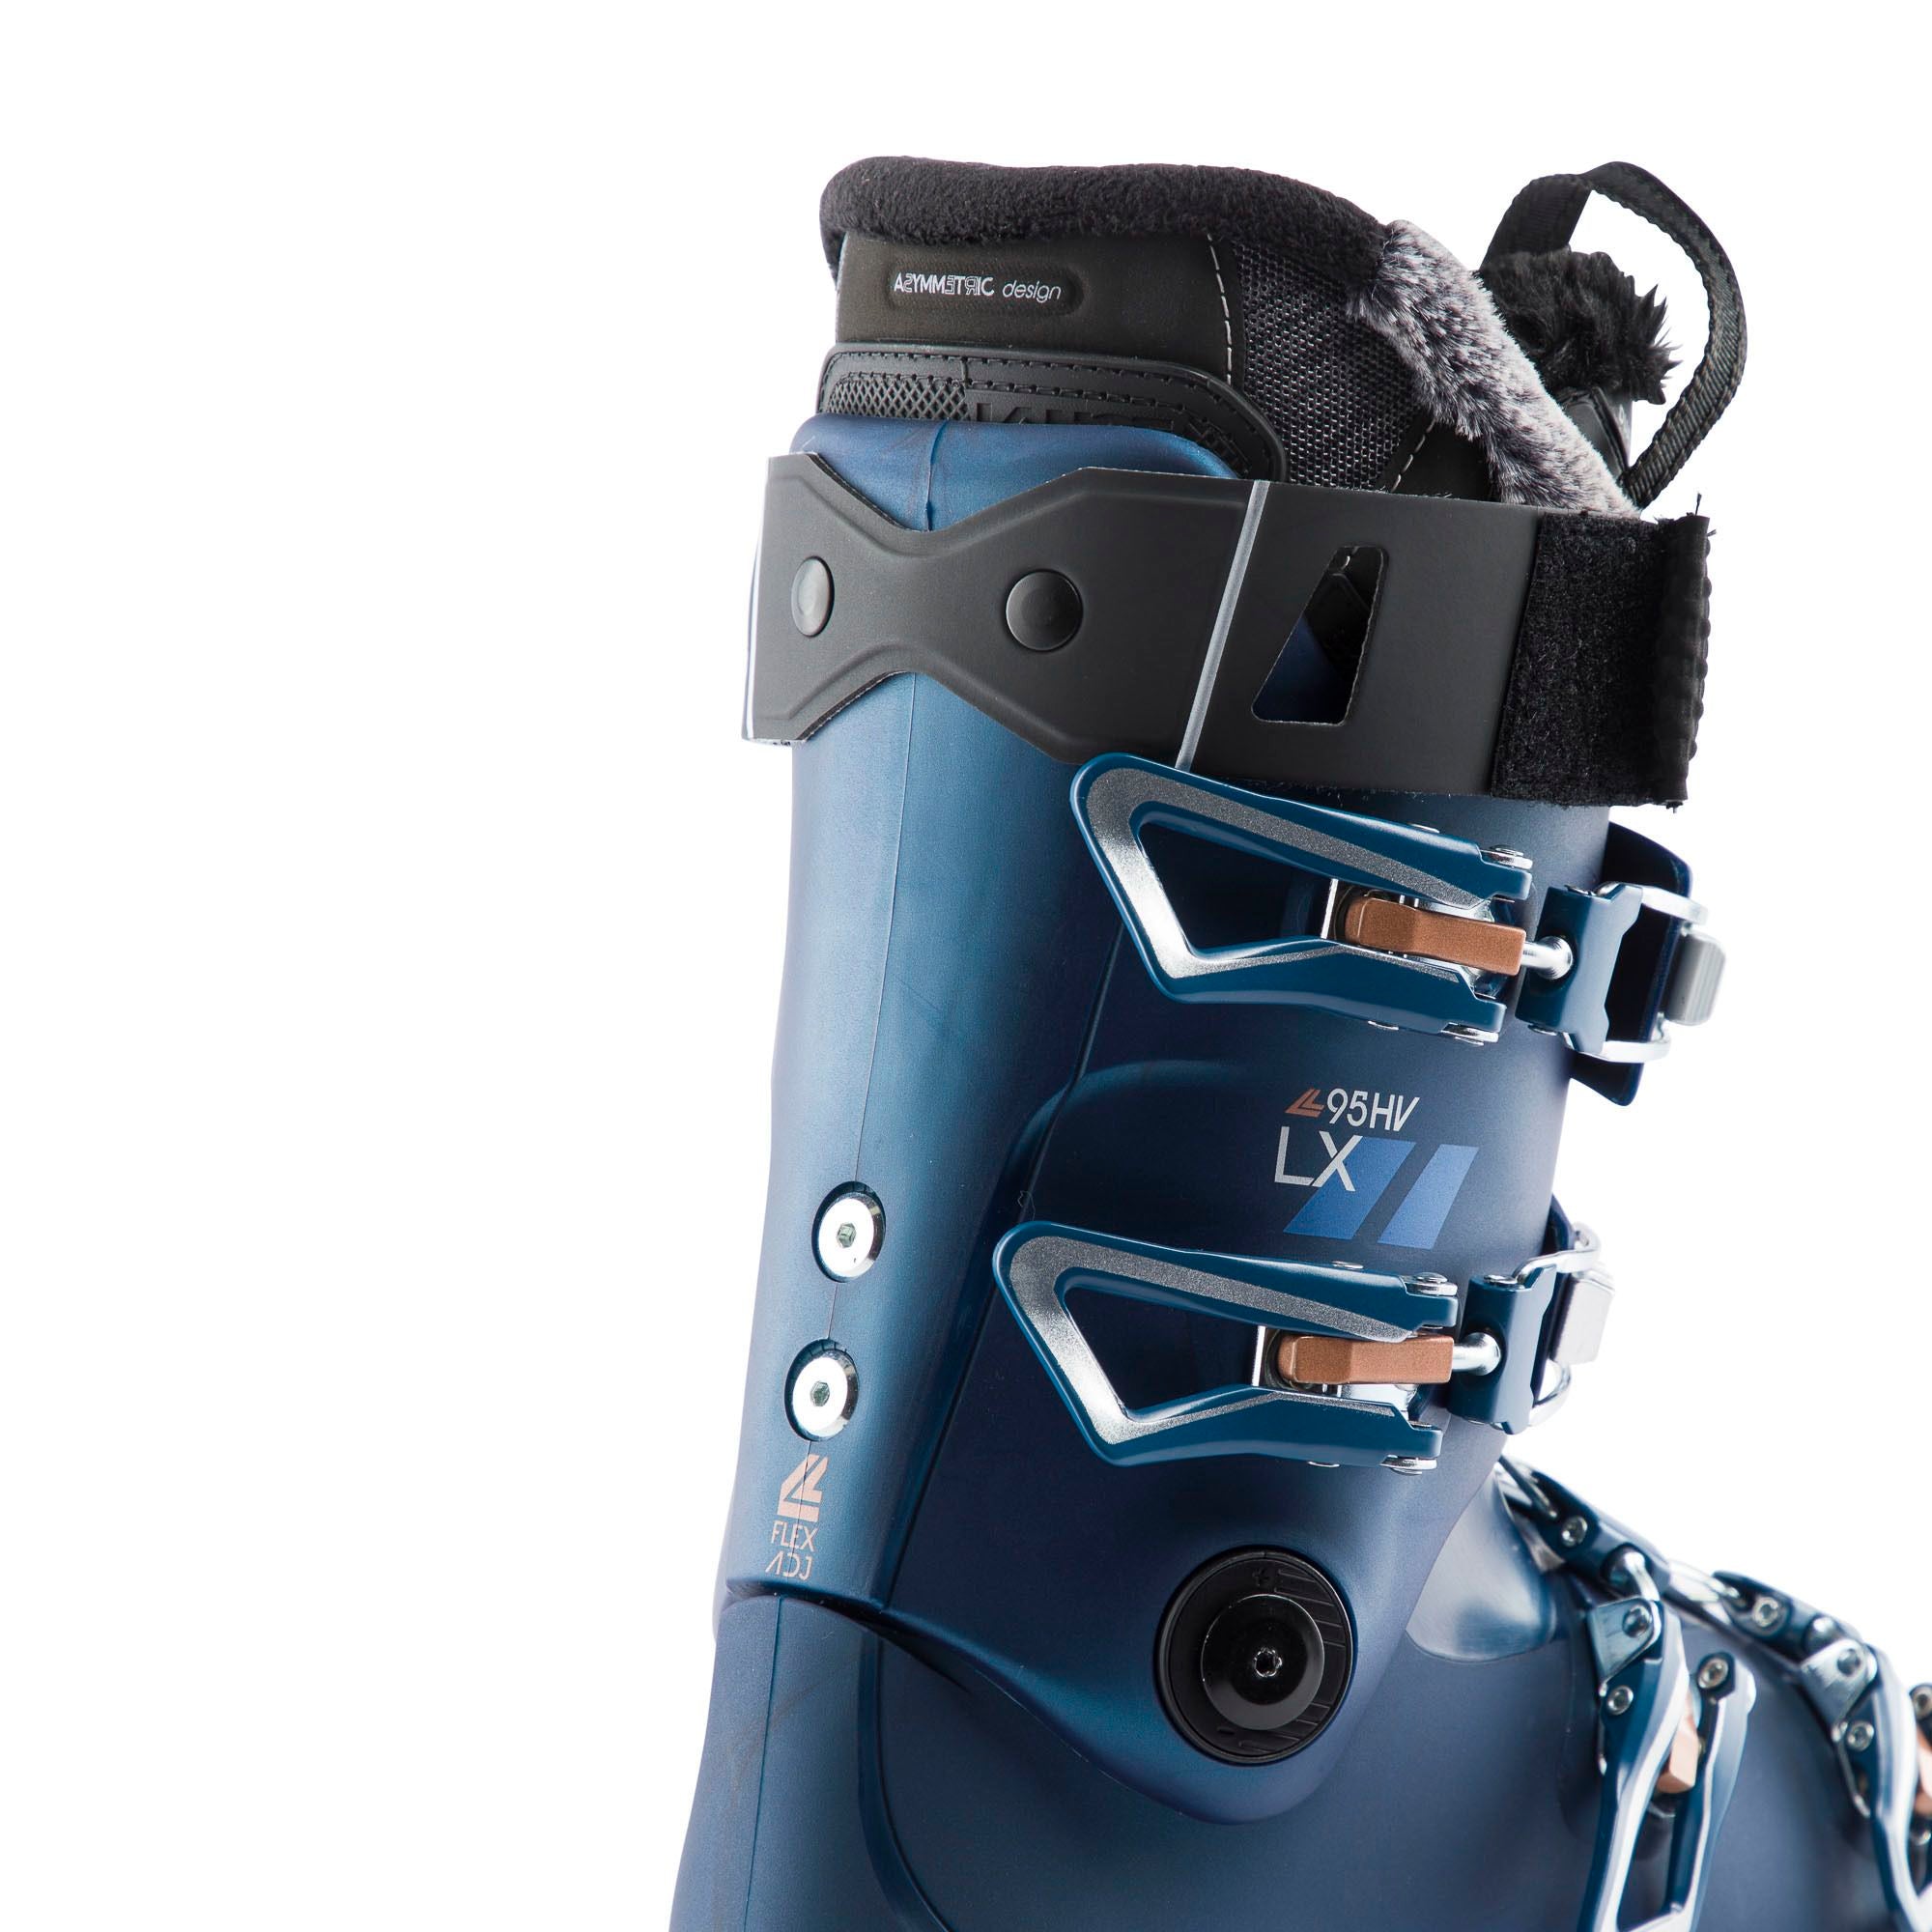 Women's LX 95 HV Ski Boots